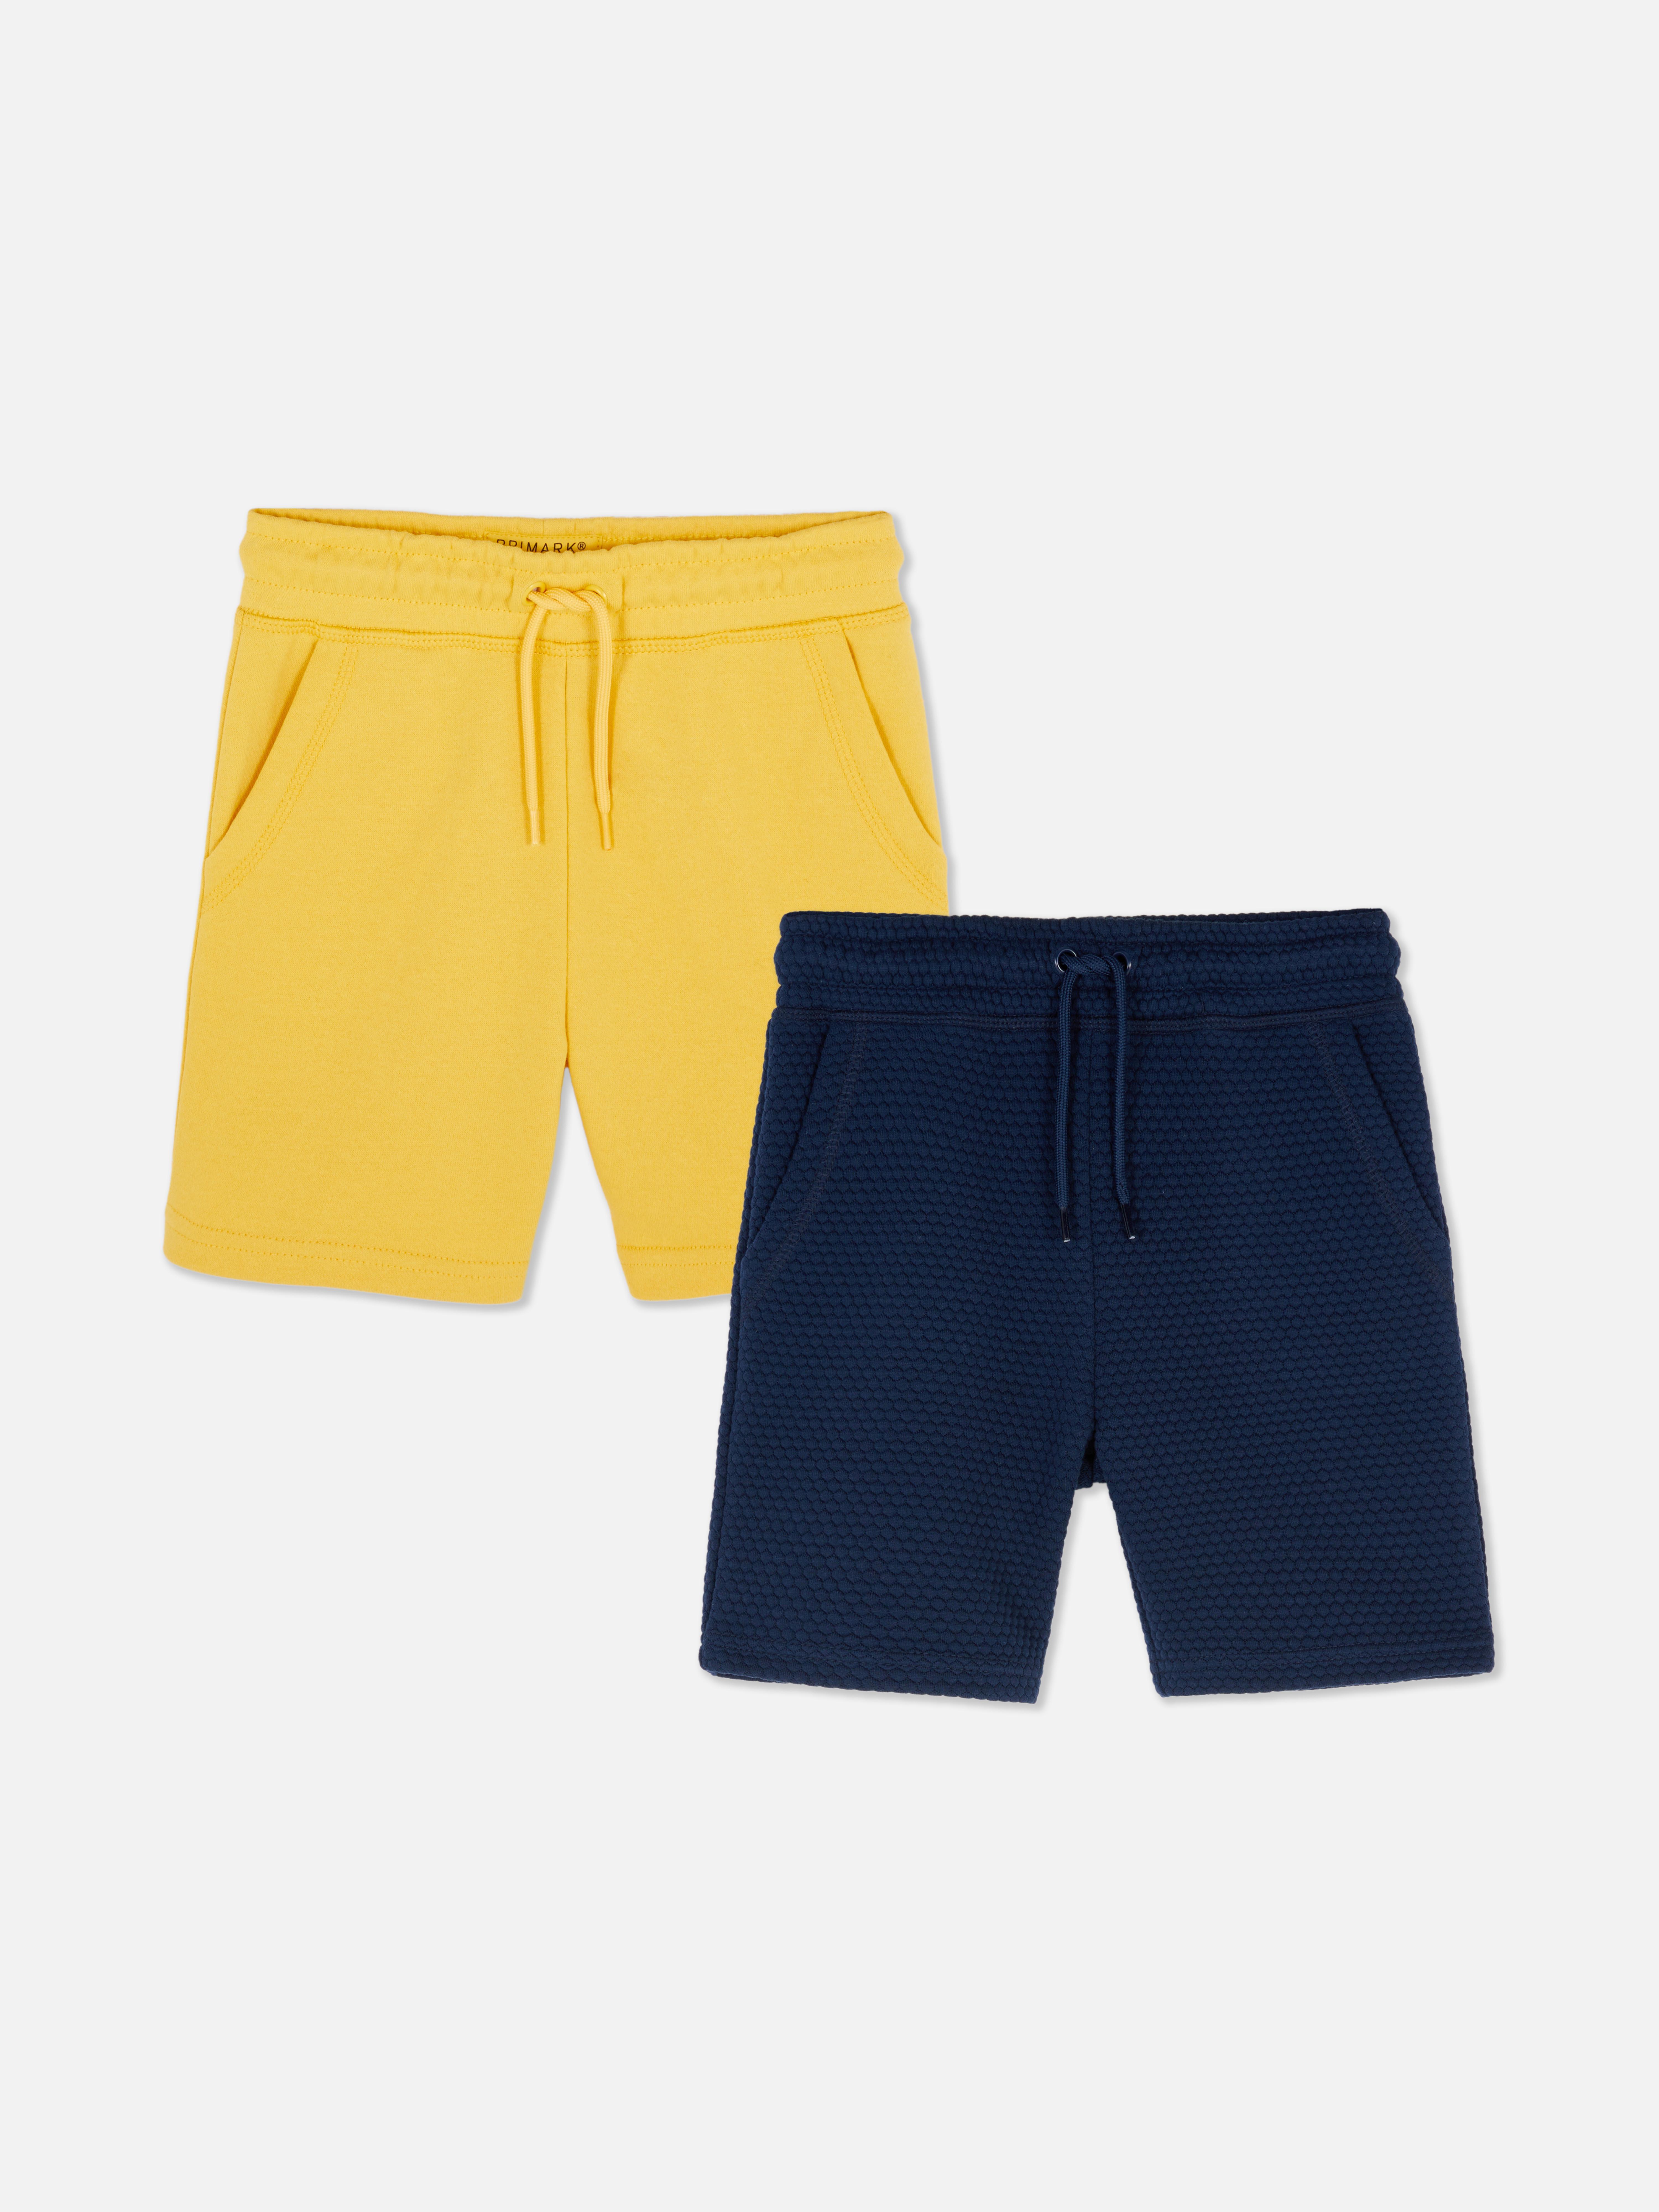 Pantalón corto para Niño en color amarillo con cinturón azul marino